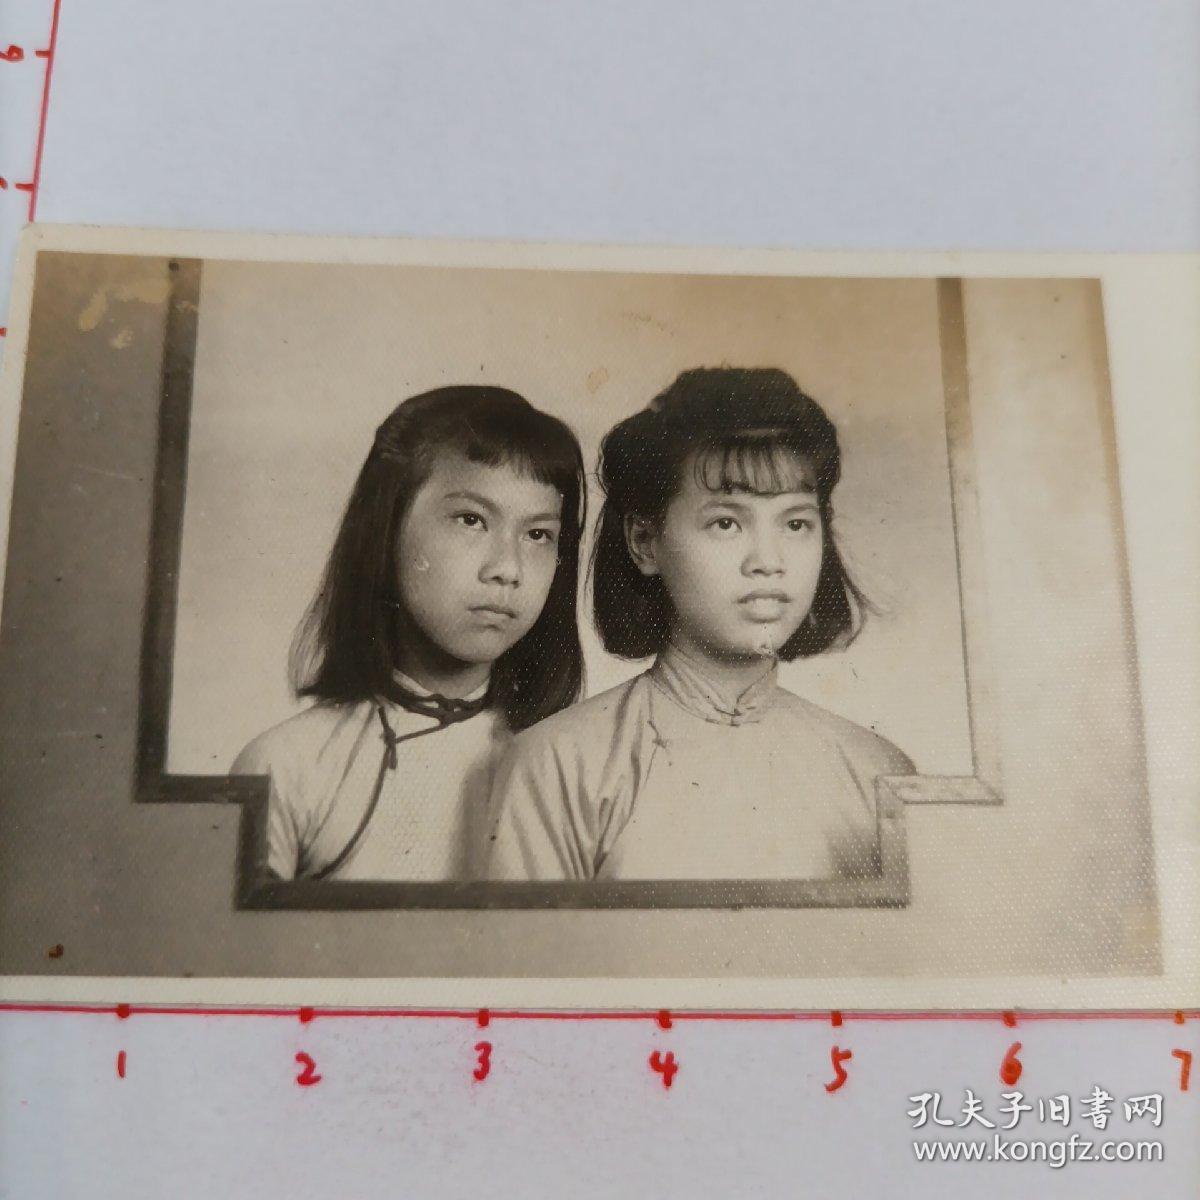 民国时期卡德照相室拍摄《美女杜心颖与同学合影》原版黑白照片1枚，背面有手写题字说明